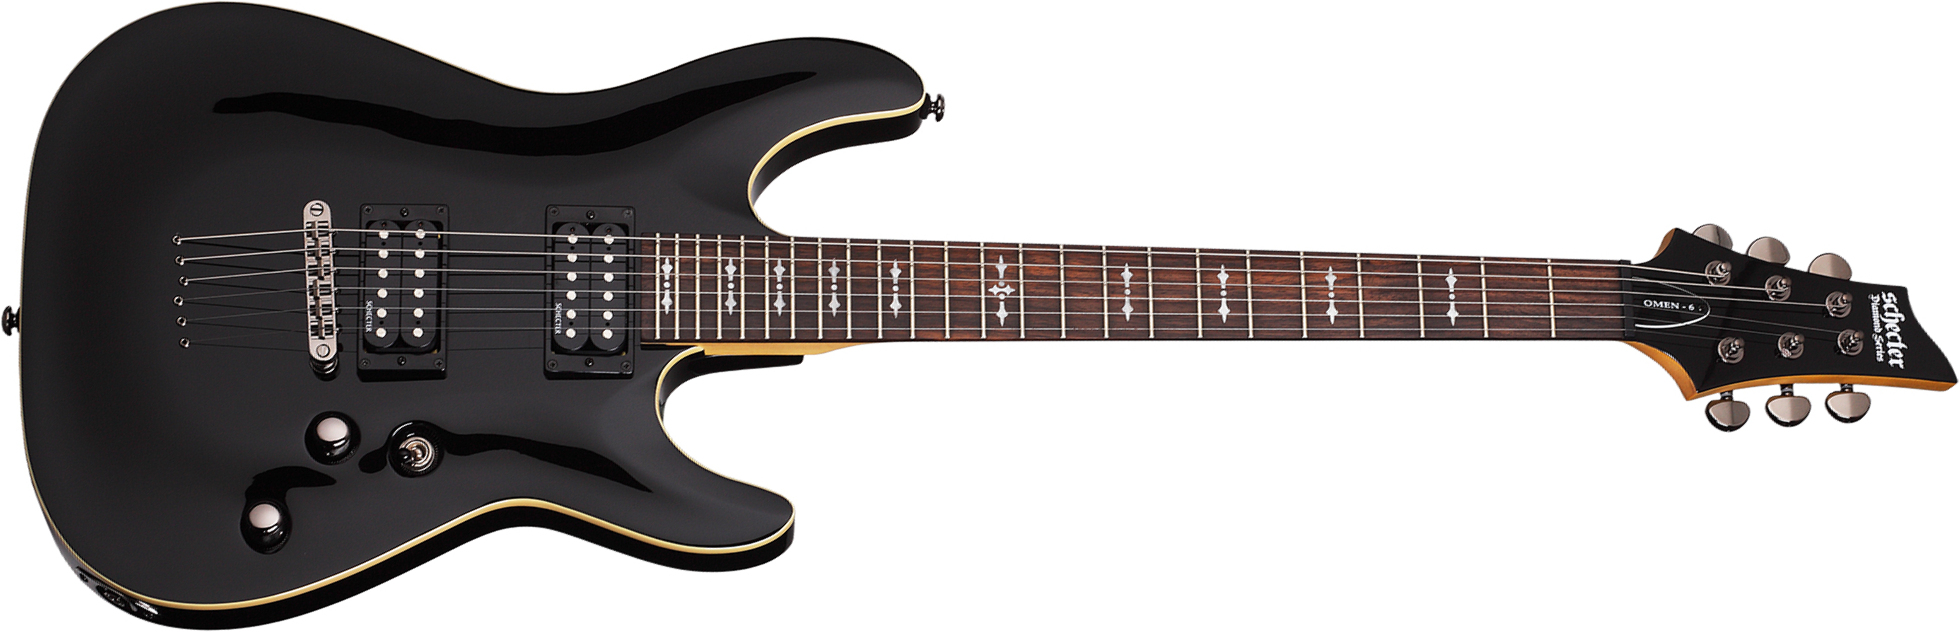 Schecter Omen-6 2h Ht Rw - Black - E-Gitarre in Str-Form - Main picture